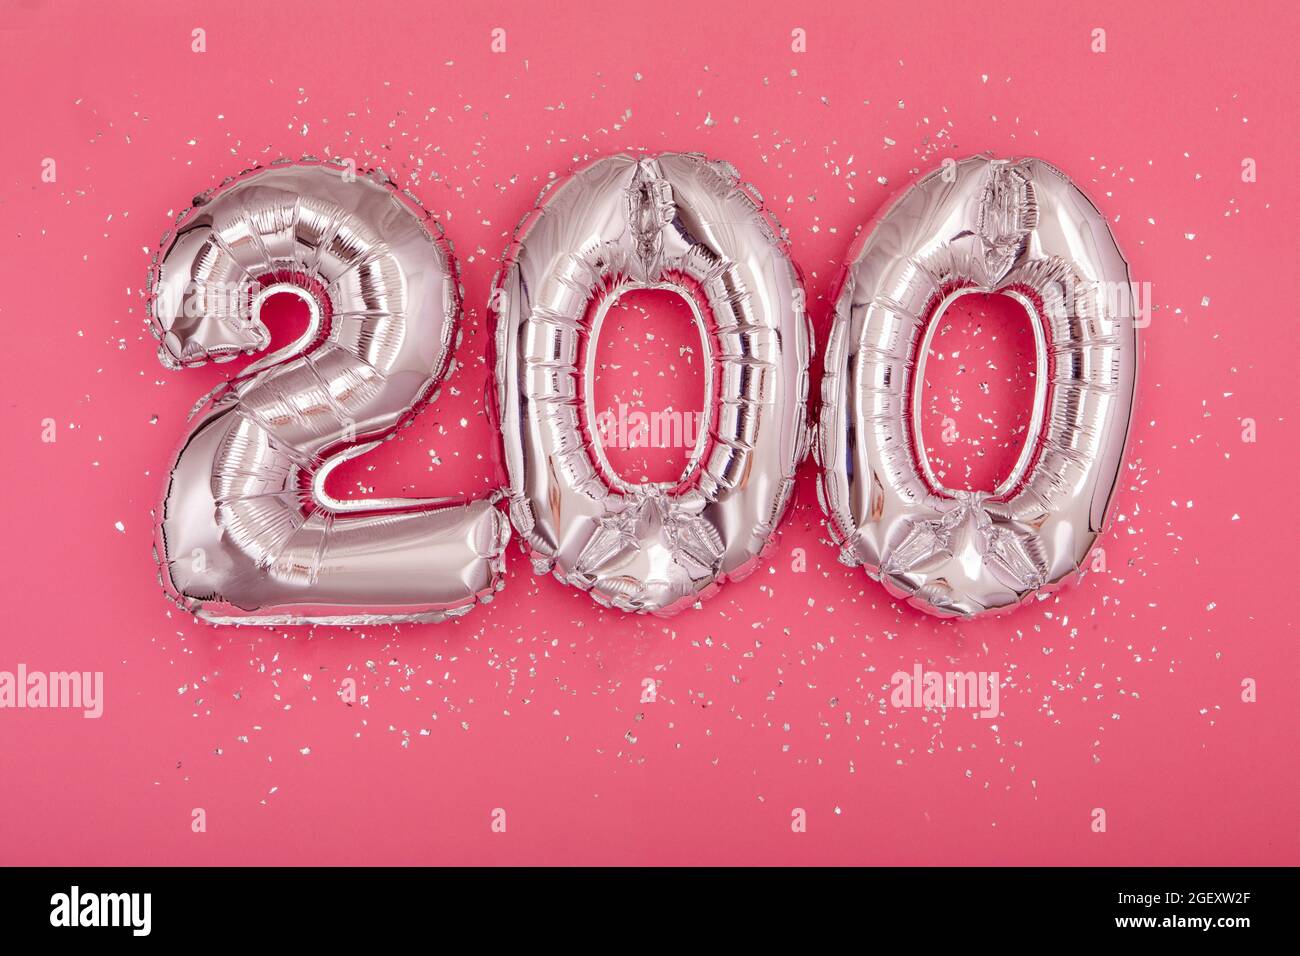 Von oben von silbernen glänzenden Luftballons, die die Zahl 200 auf rosa Hintergrund mit verstreutem Glitzer demonstrieren Stockfoto